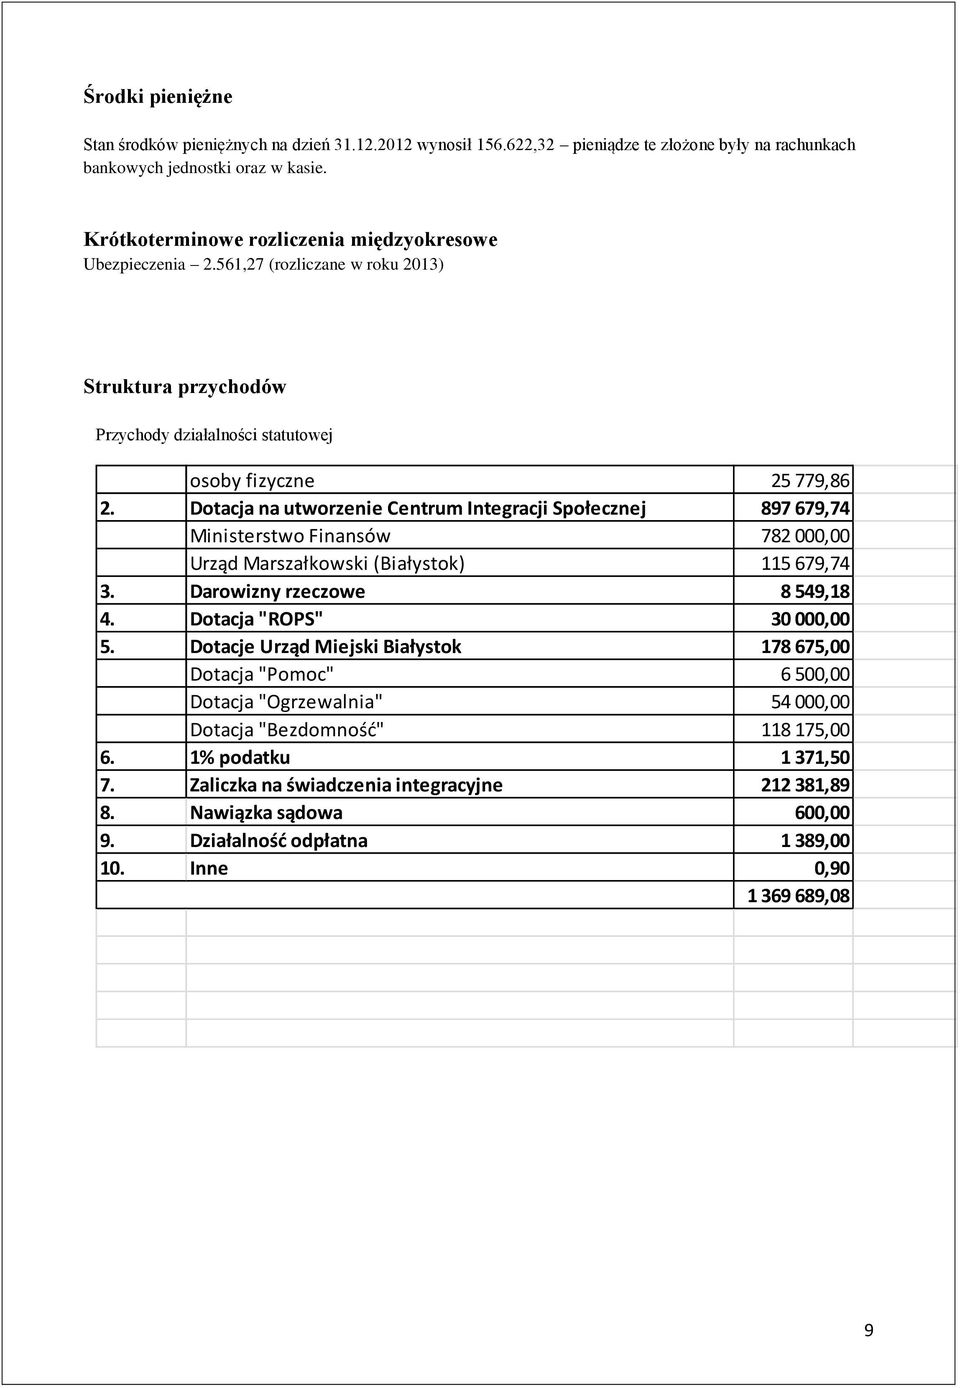 Dotacja na utworzenie Centrum Integracji Społecznej 897 679,74 Ministerstwo Finansów 782 000,00 Urząd Marszałkowski (Białystok) 115 679,74 3. Darowizny rzeczowe 8 549,18 4. Dotacja "ROPS" 30 000,00 5.